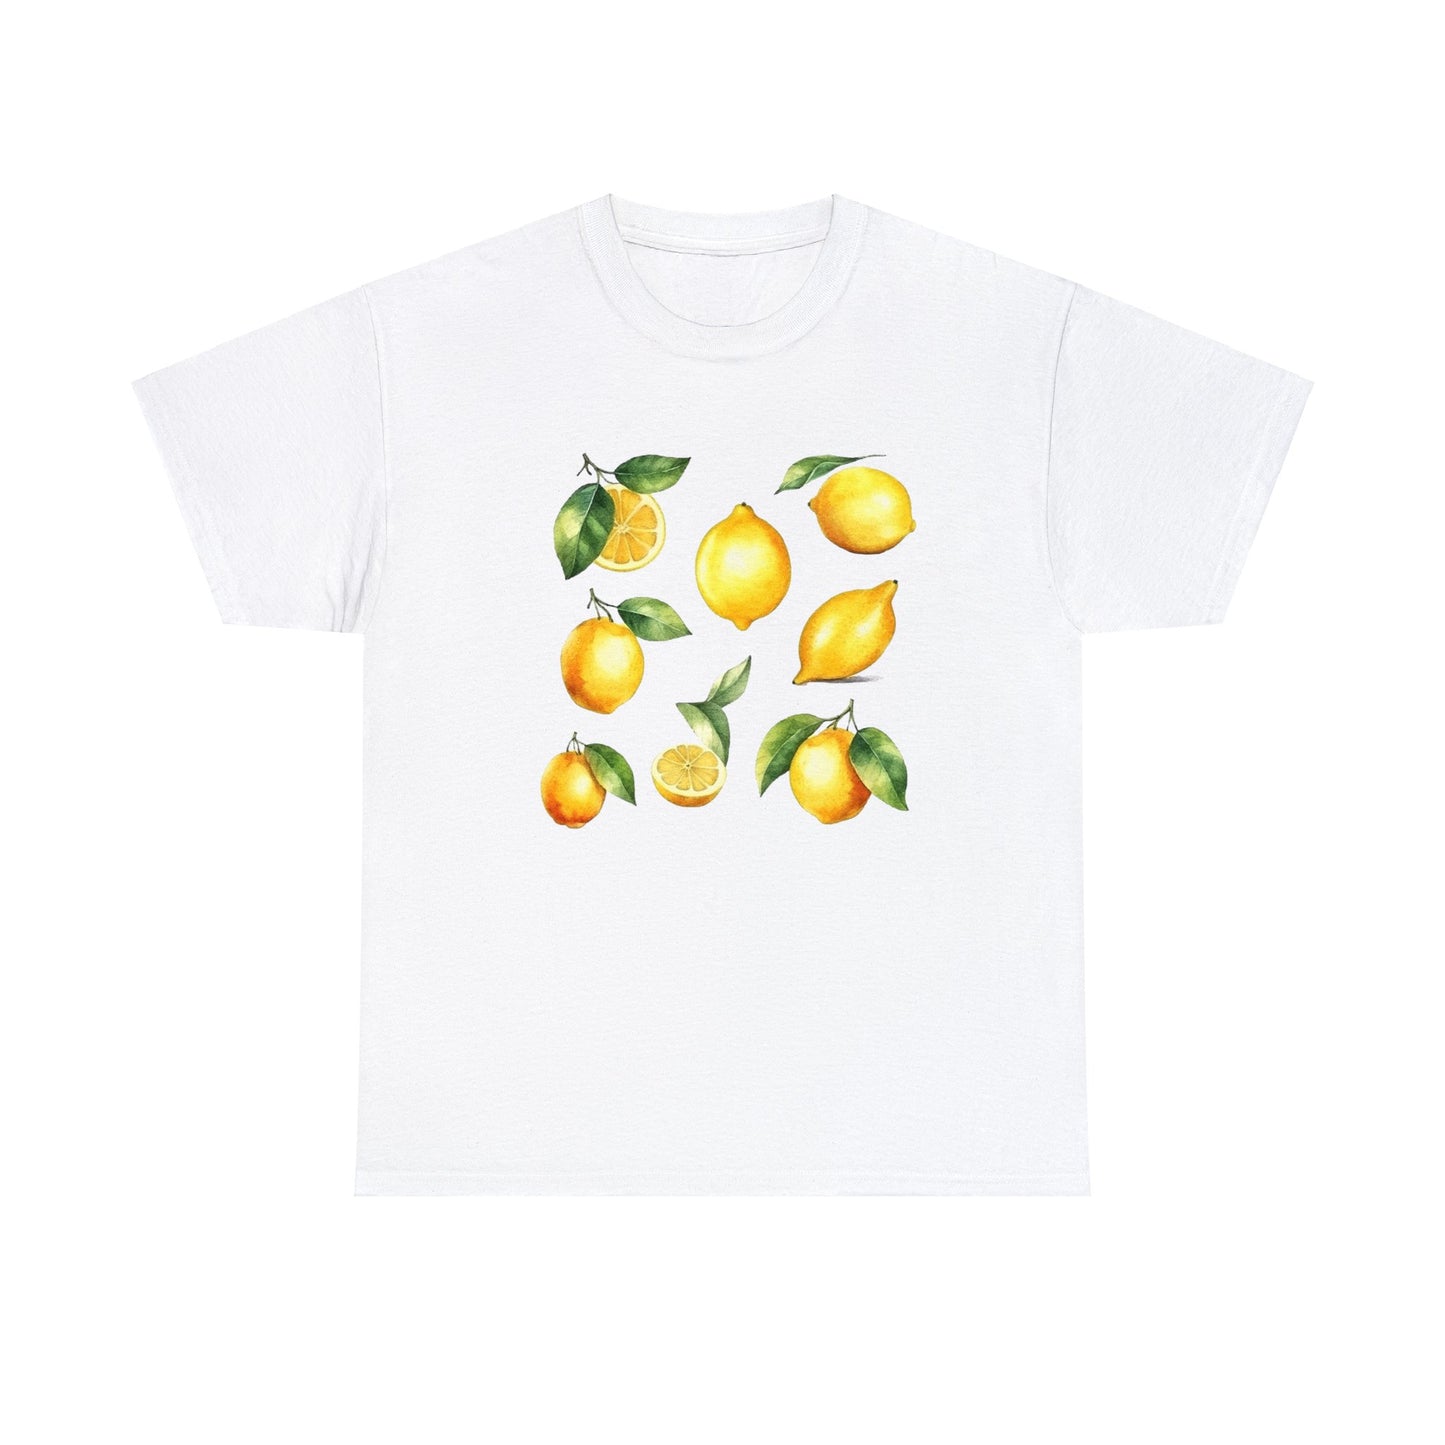 Lemon T-shirt